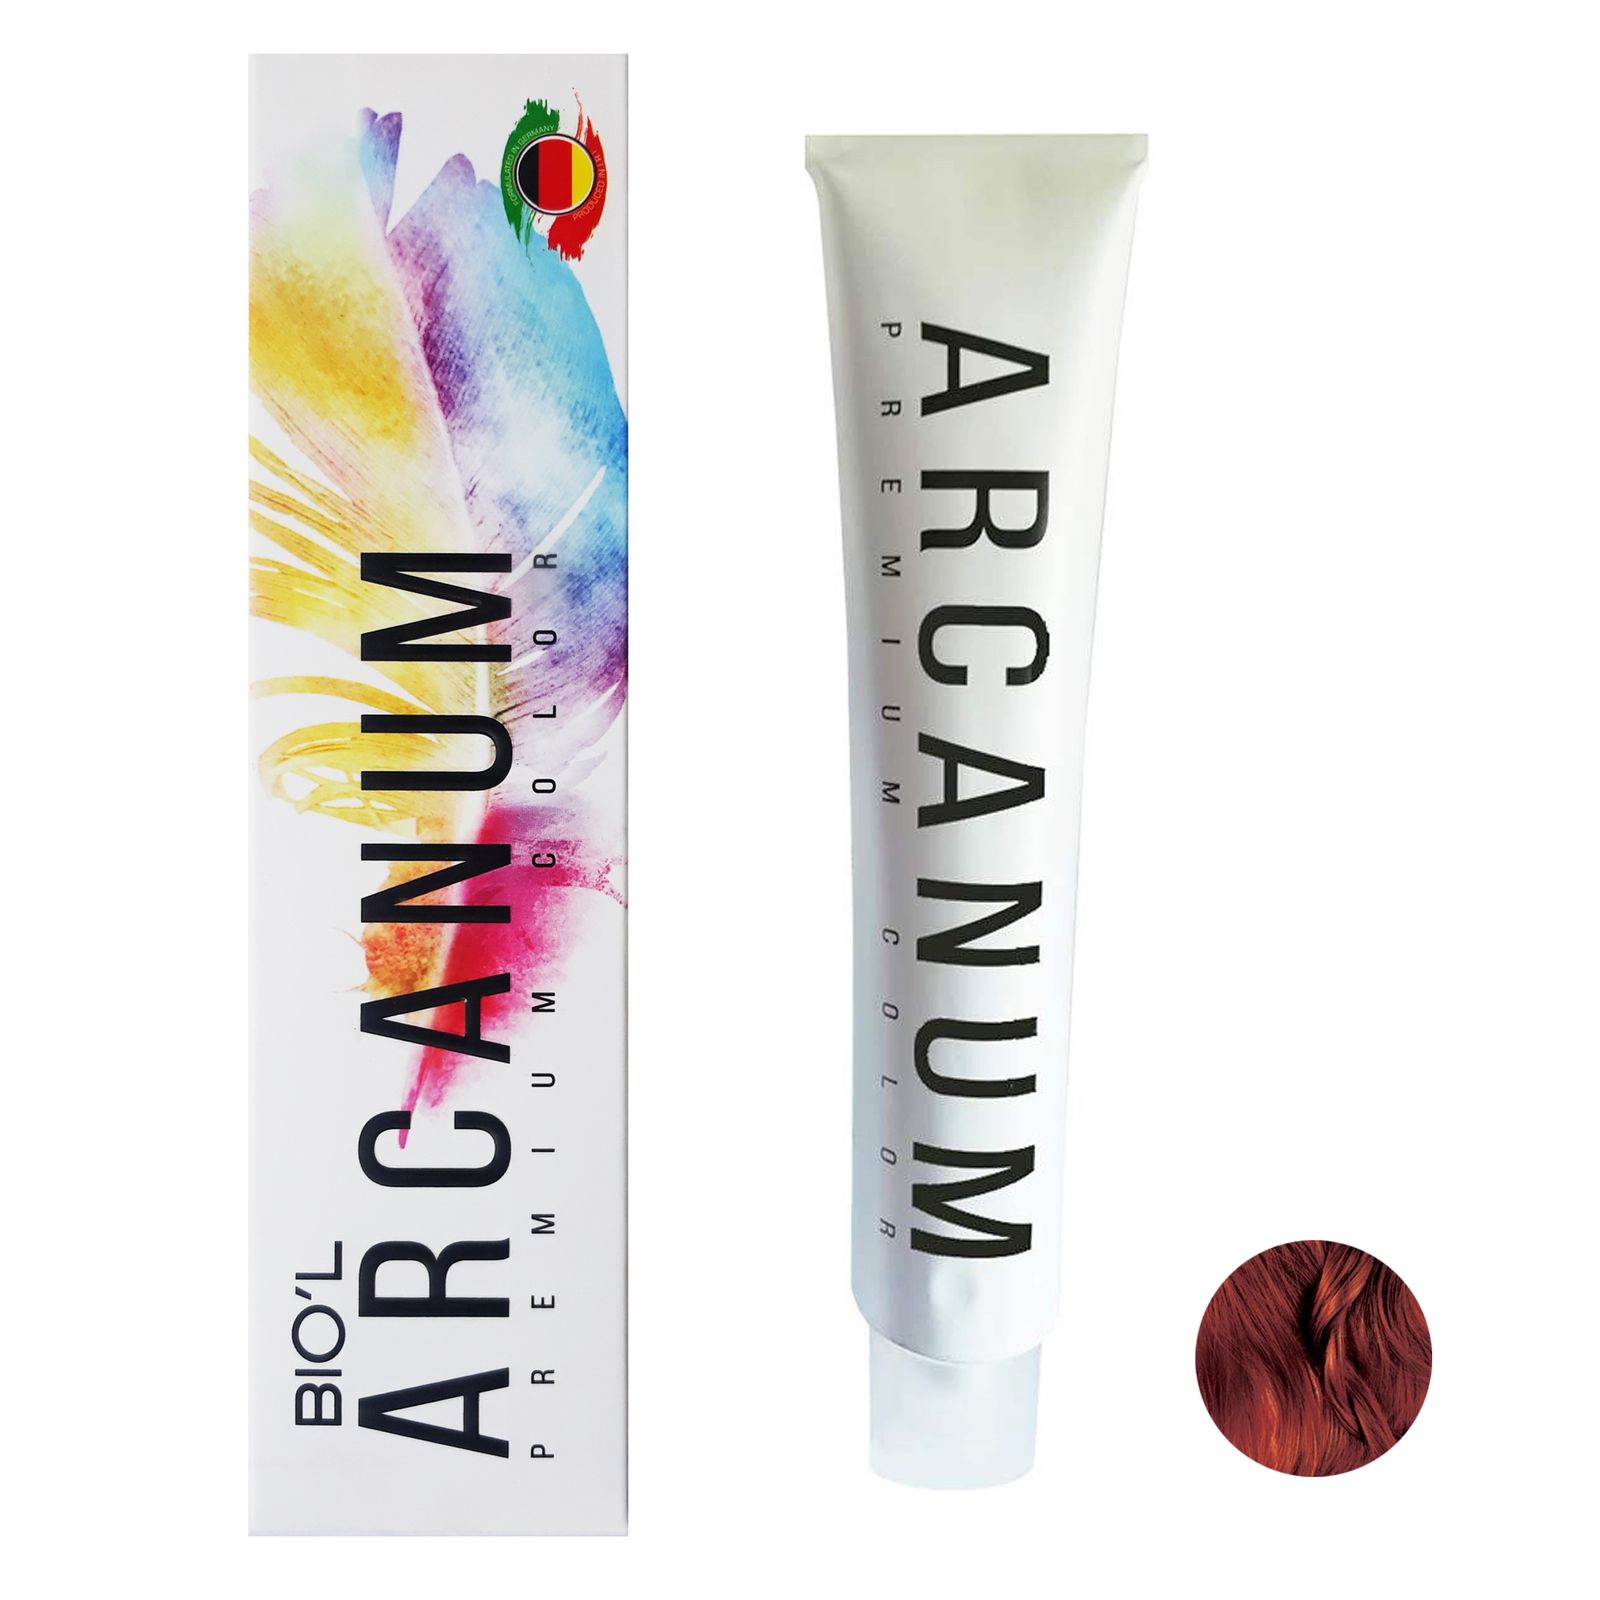 رنگ مو بیول مدل Arcanum شماره 5.85 حجم 120 میلی لیتر رنگ قهوه ای گوشتی روشن